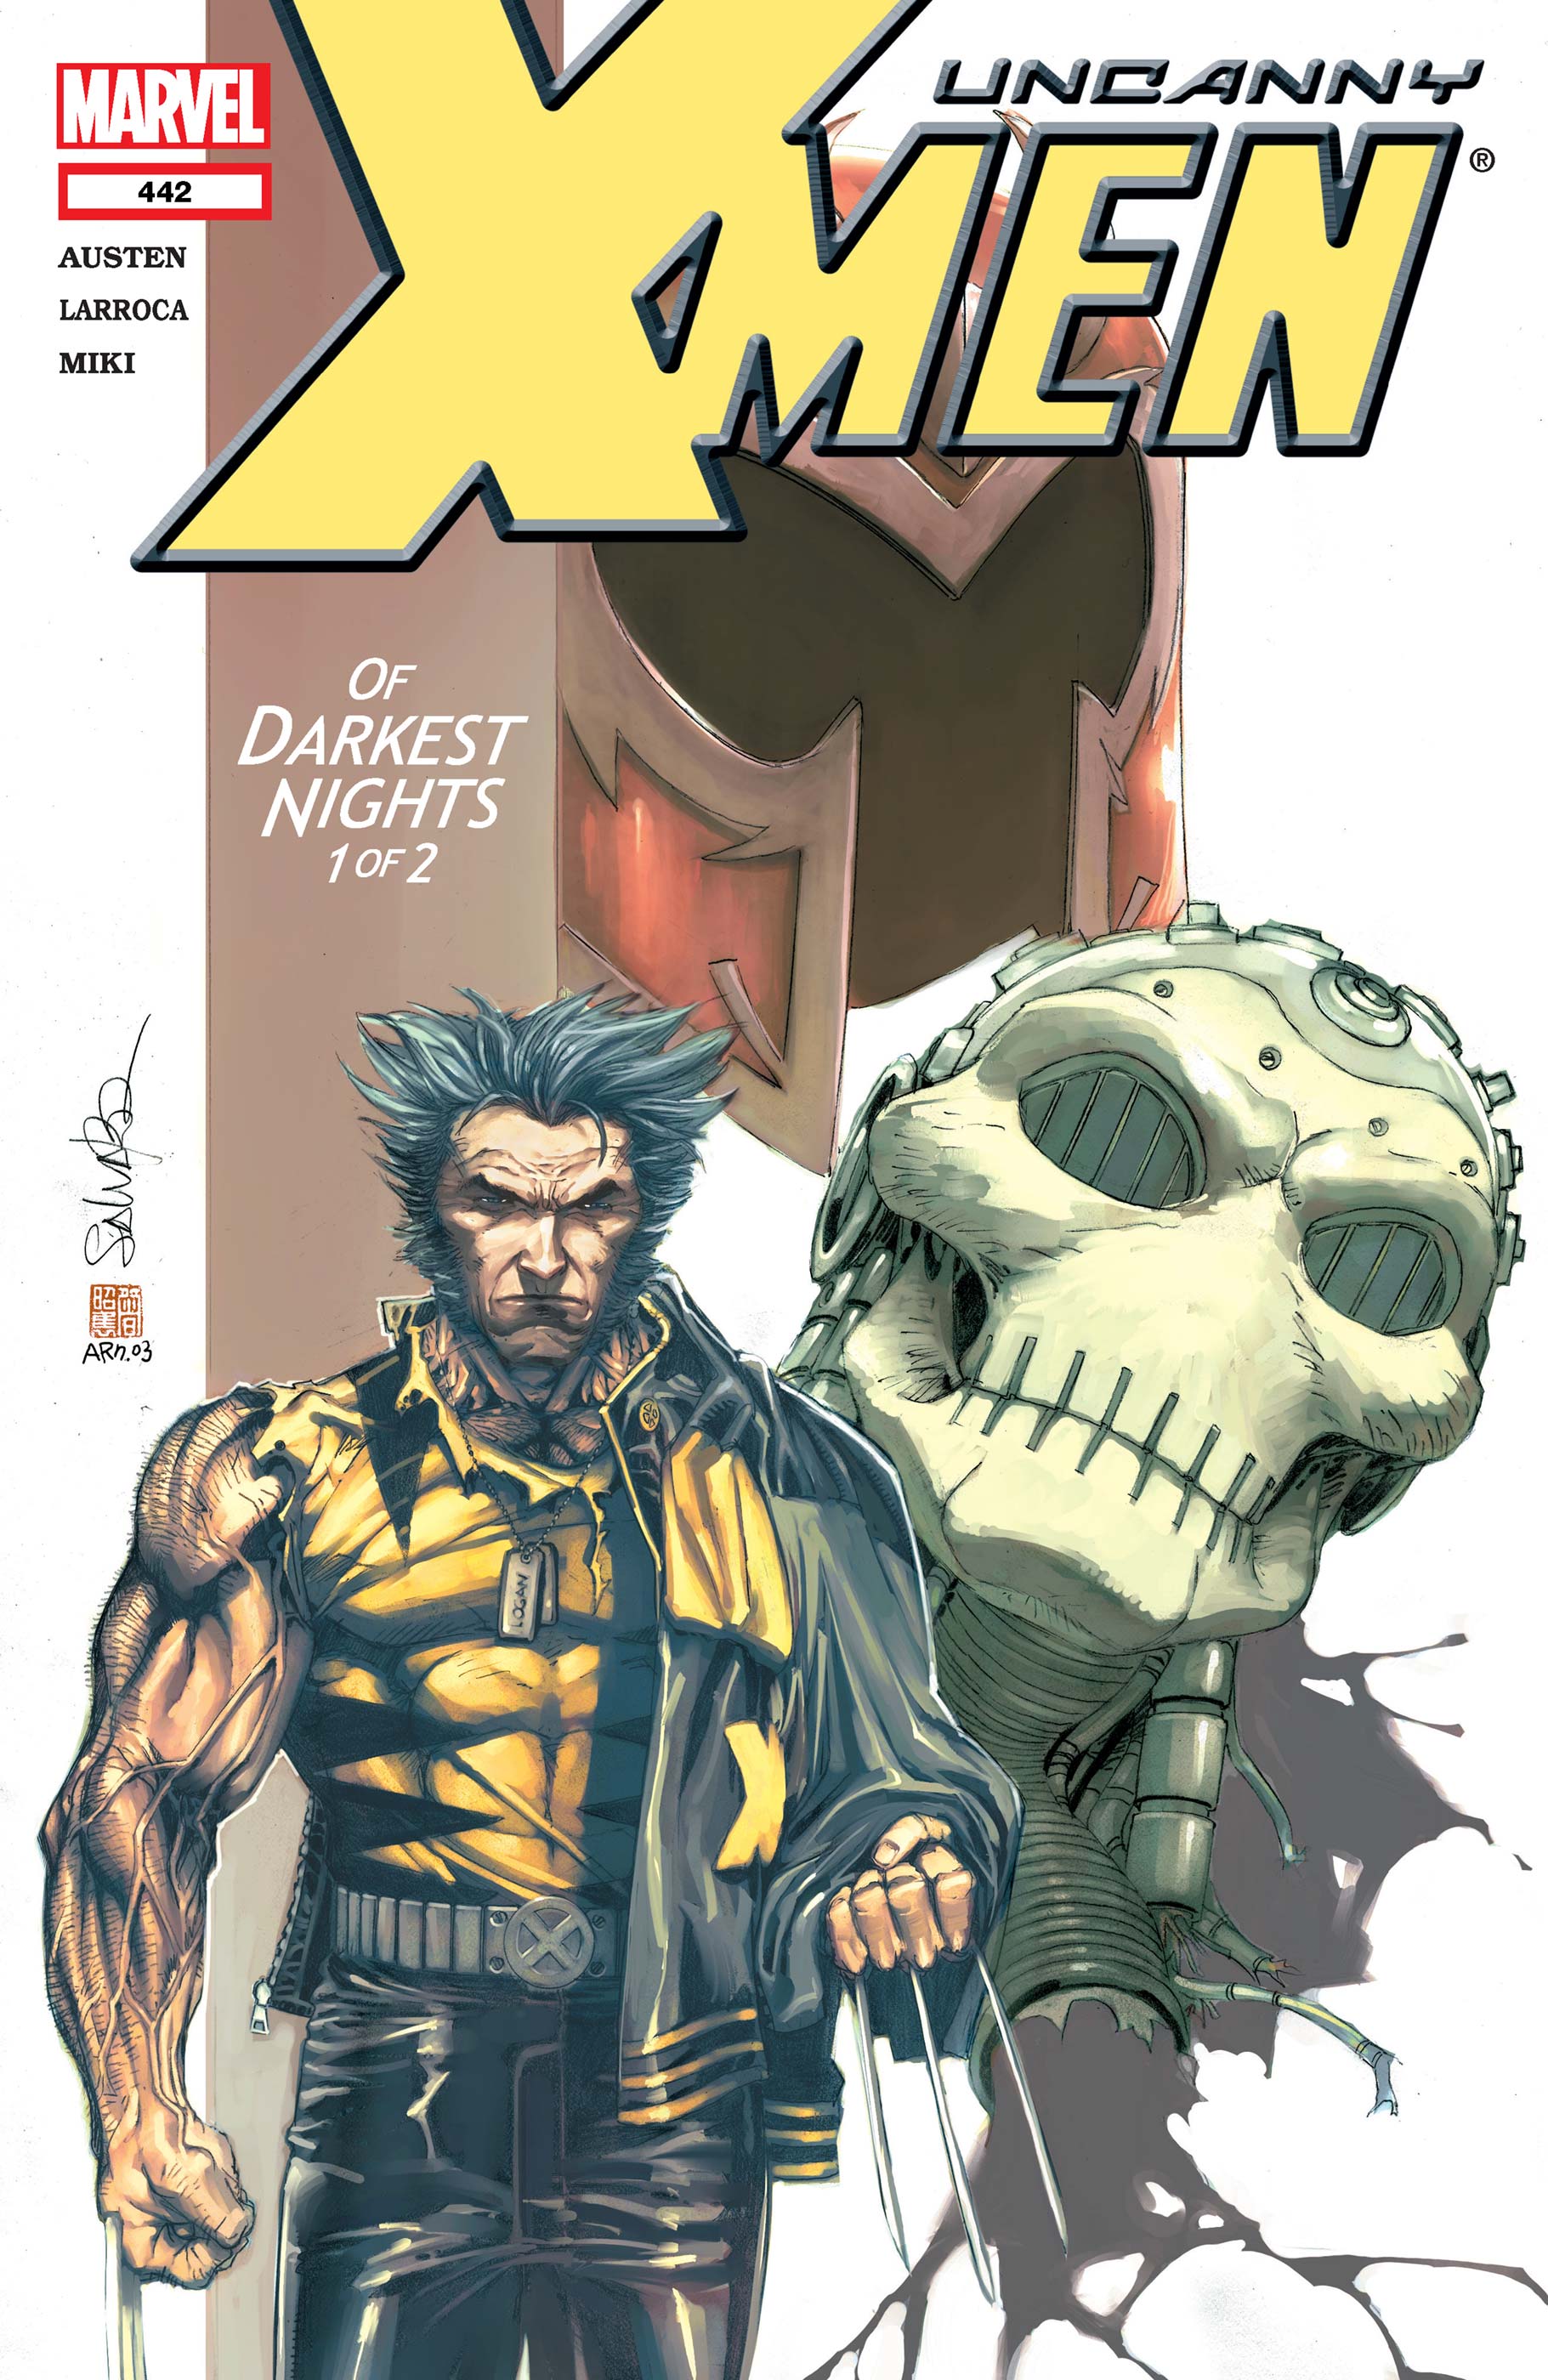 UNCANNY X-MEN #442#443 - MARVEL COMICS (2004)